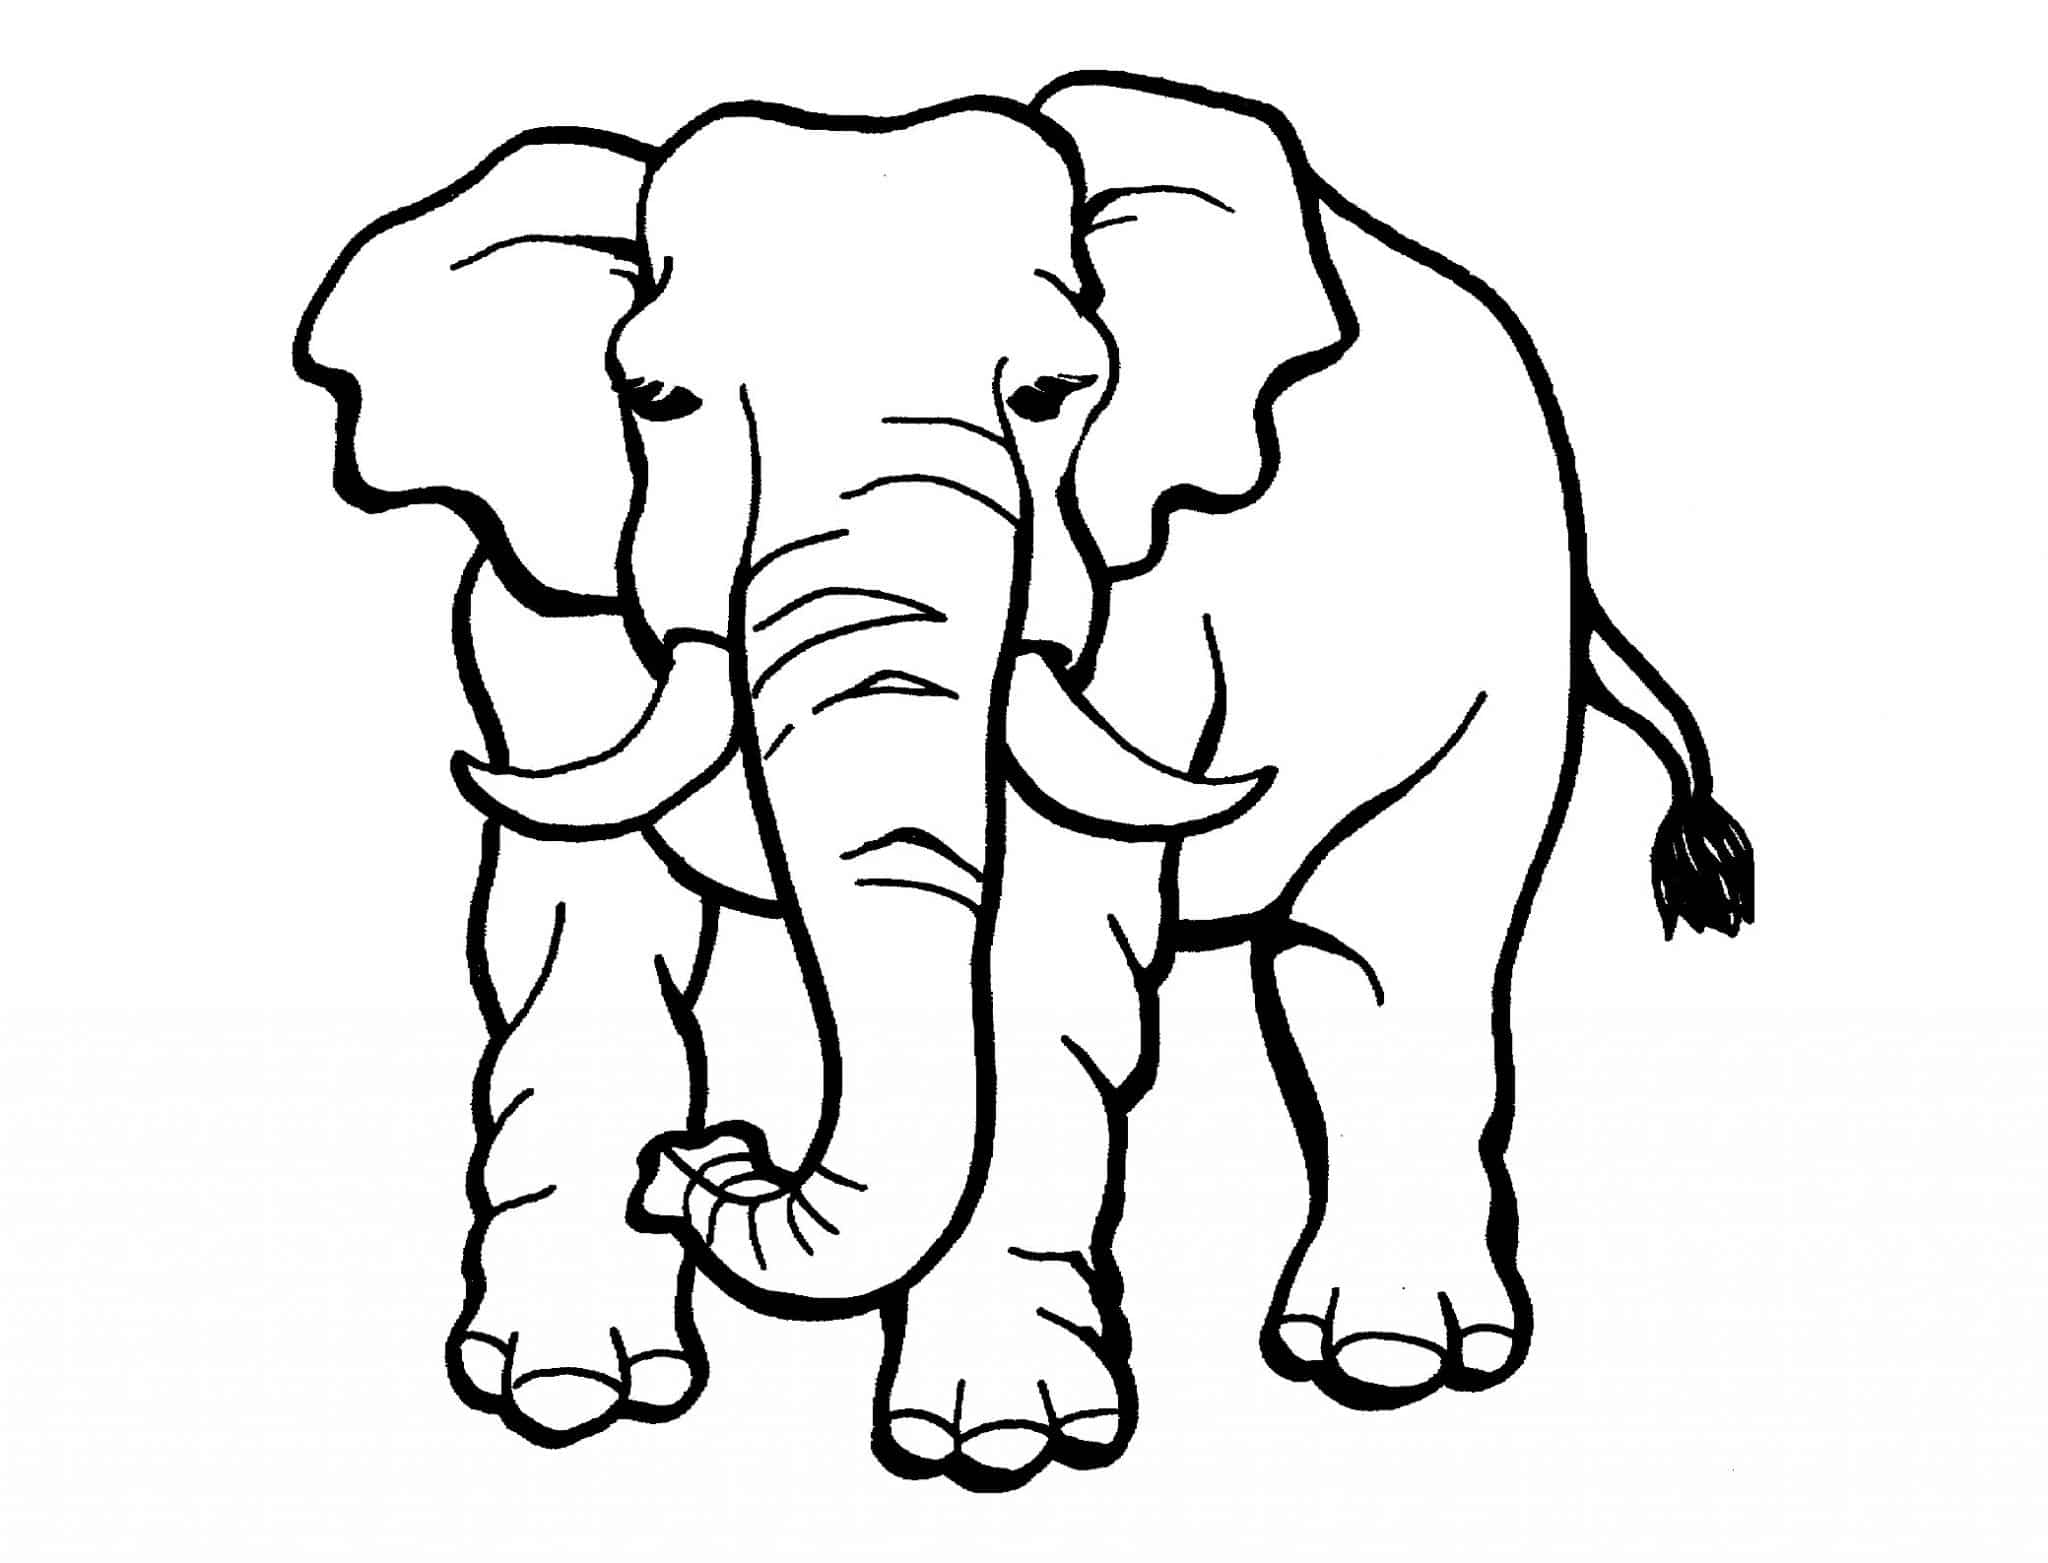 Vẽ Con Voi - Dạy bé vẽ và tô màu con Voi - How to Draw an Elephant Easy  -Duy Hiếu - YouTube